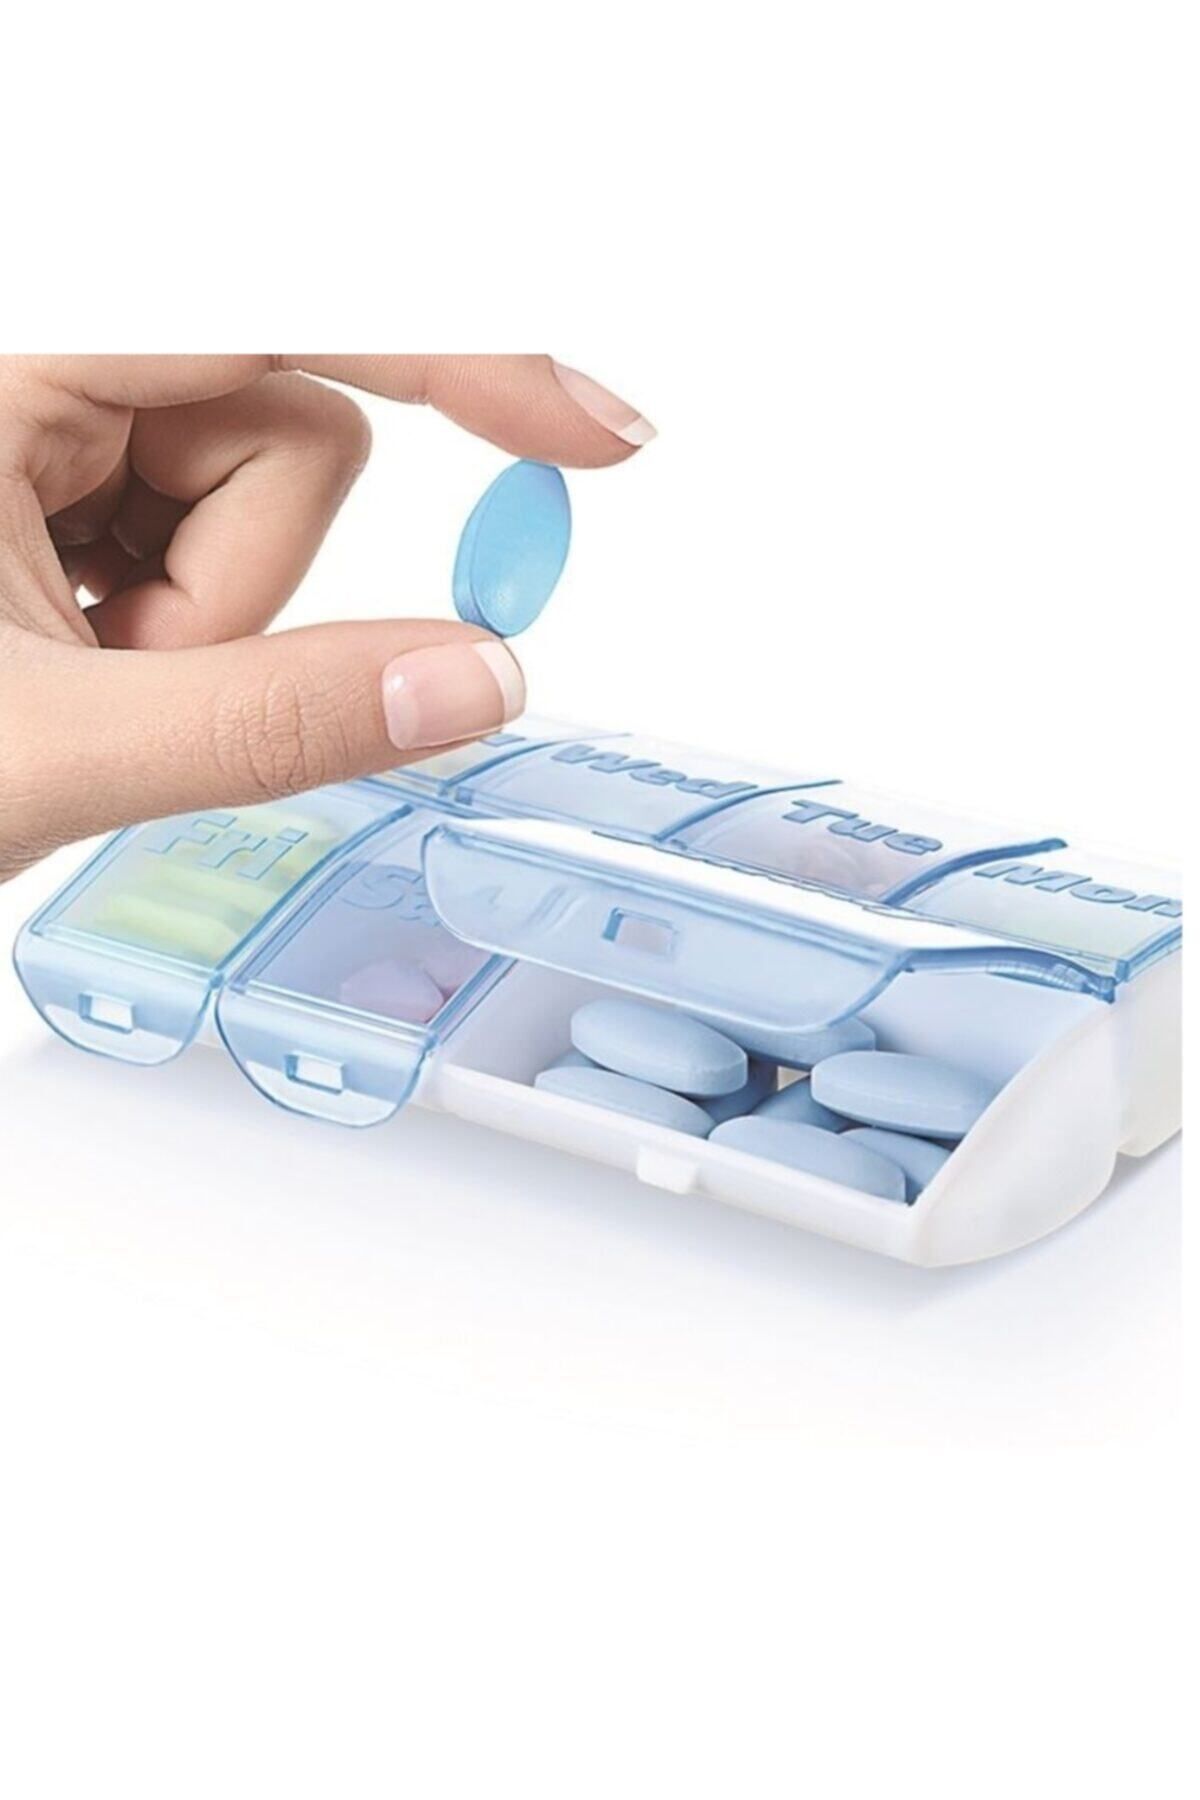 Titiz Plastik Titiz Medic Pill Box Ilaç Kutusu Günlük Ve Haftalık Braille Alfabesi Destekli